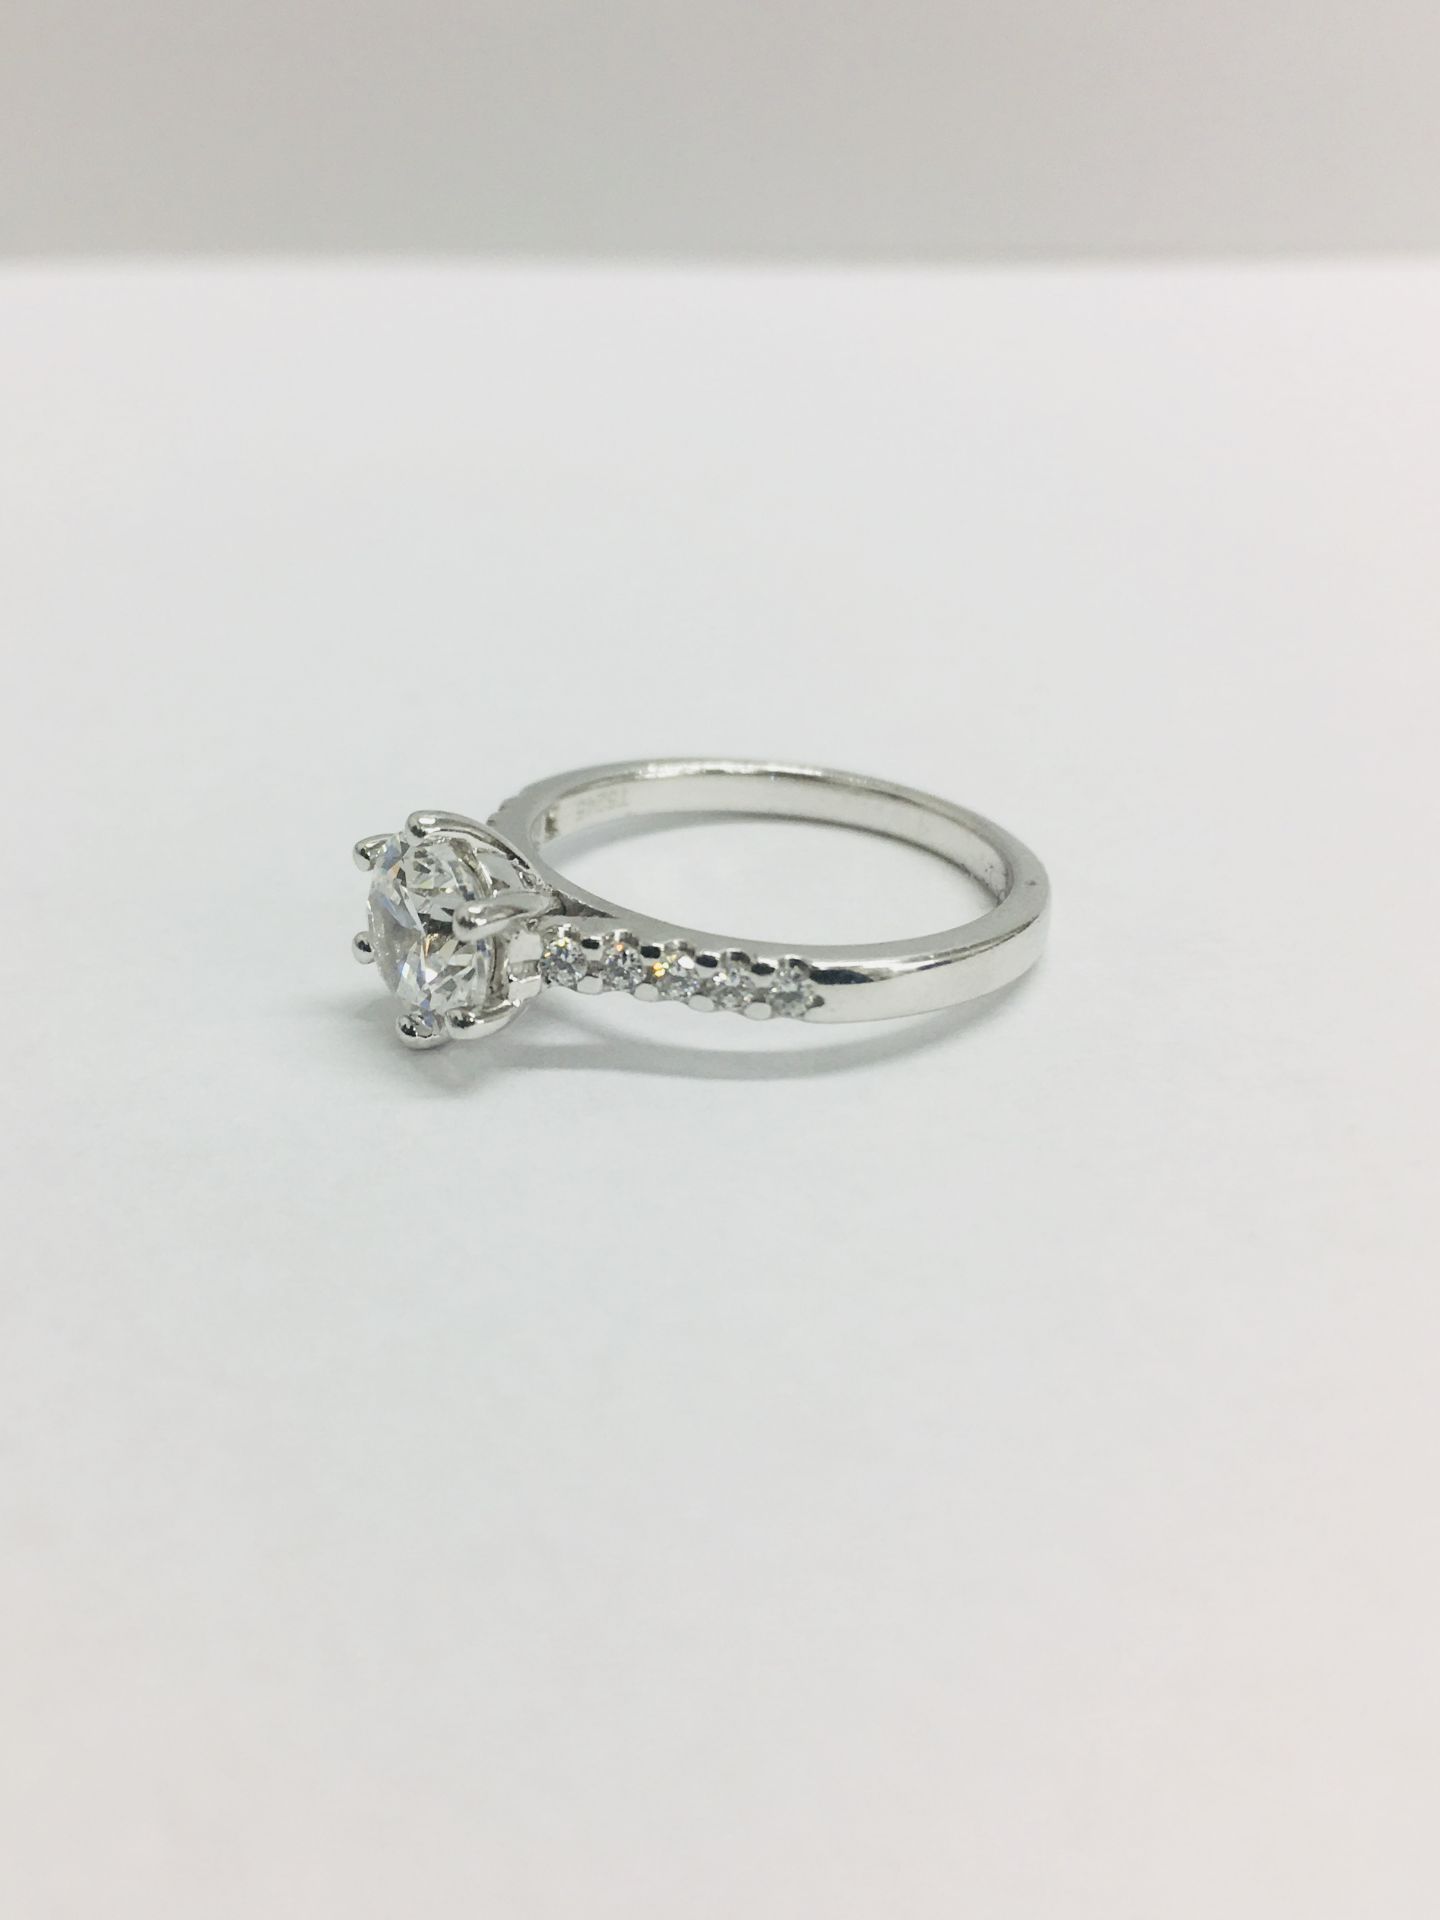 Platinum diamond solitaire ring,0.50ct brilliant cut diamond vs clarity D colour,platinum diamond - Image 5 of 6